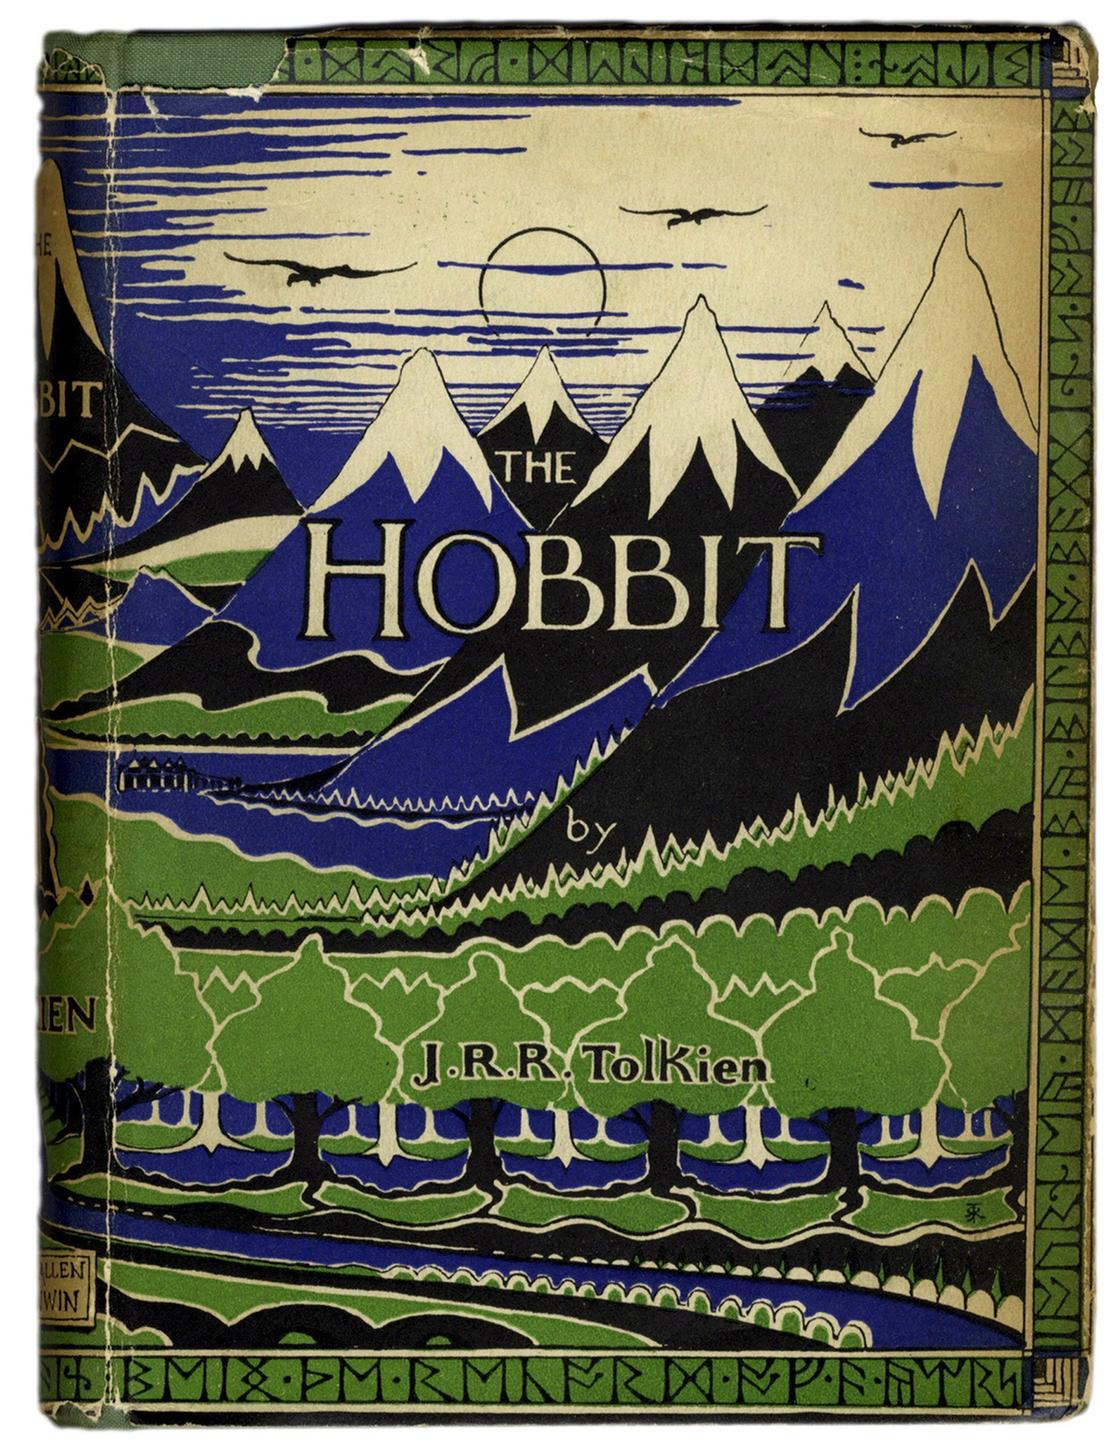 Englischsprachiges Buchcover von "Der Hobbit" 